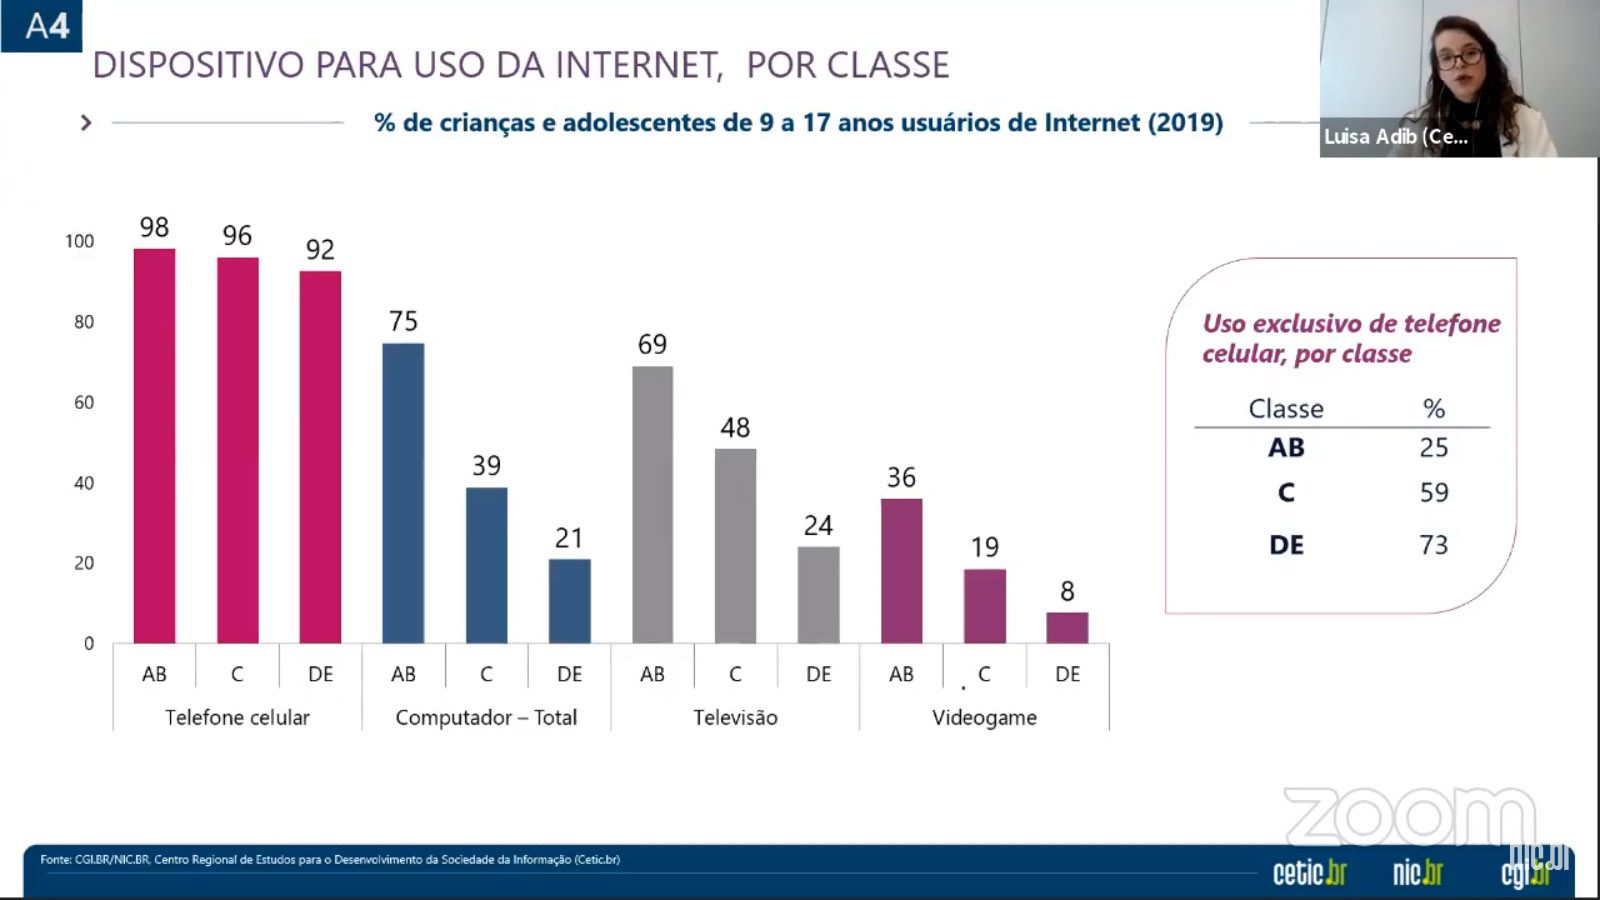 Acesso à internet é exclusivo no celular para 59% no Brasil